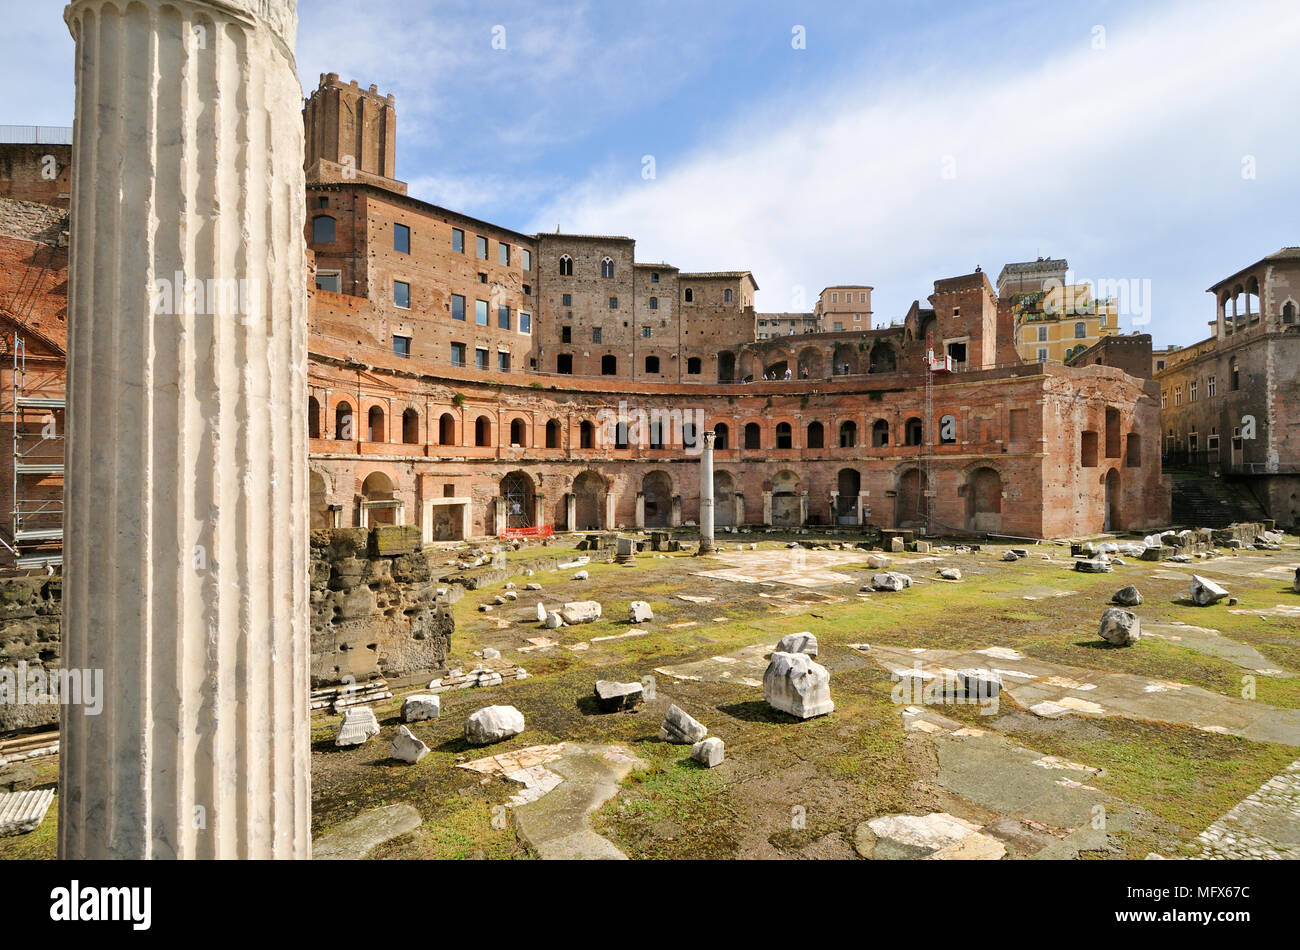 Die Trajans Märkte, ein UNESCO-Weltkulturerbe, in der Nähe des Forum Romanum. Rom, Italien Stockfoto